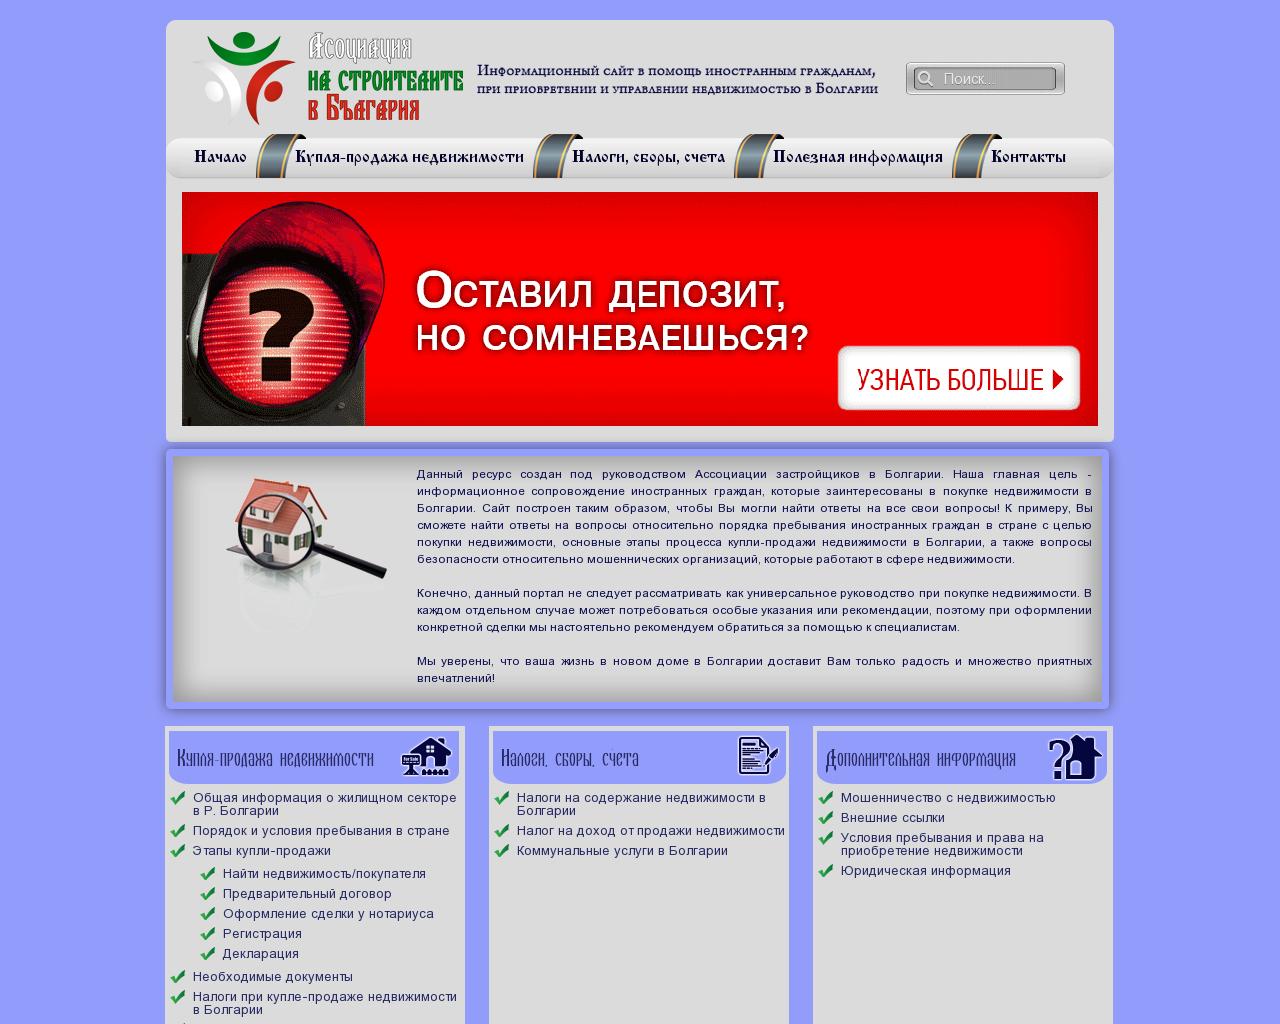 Изображение сайта ассоциация-застройщиков-болгарии.рф в разрешении 1280x1024